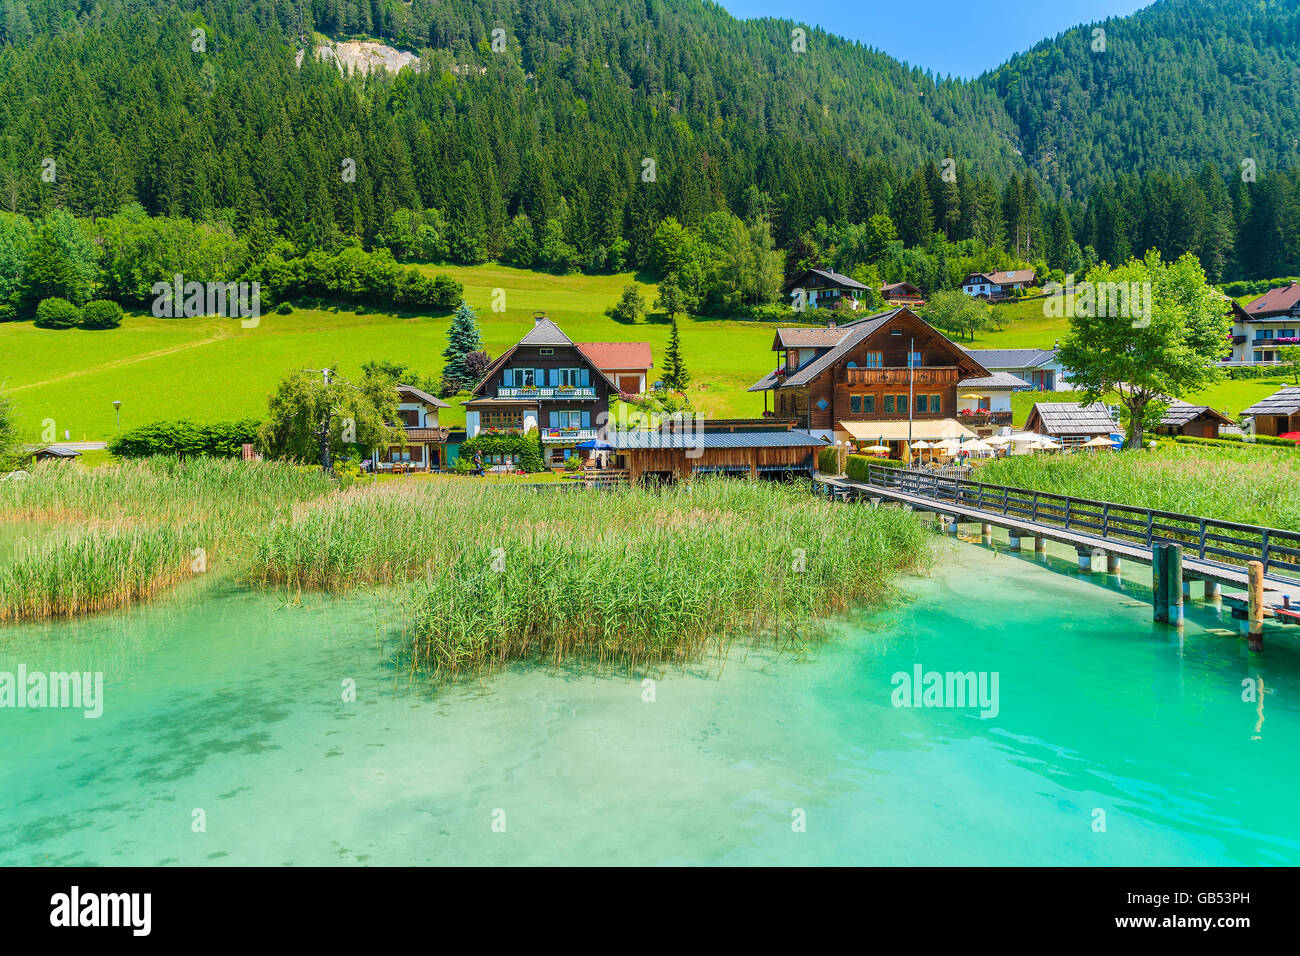 Maisons sur les rives du magnifique lac alpin Weissensee en été paysage de montagnes des Alpes, Autriche Banque D'Images